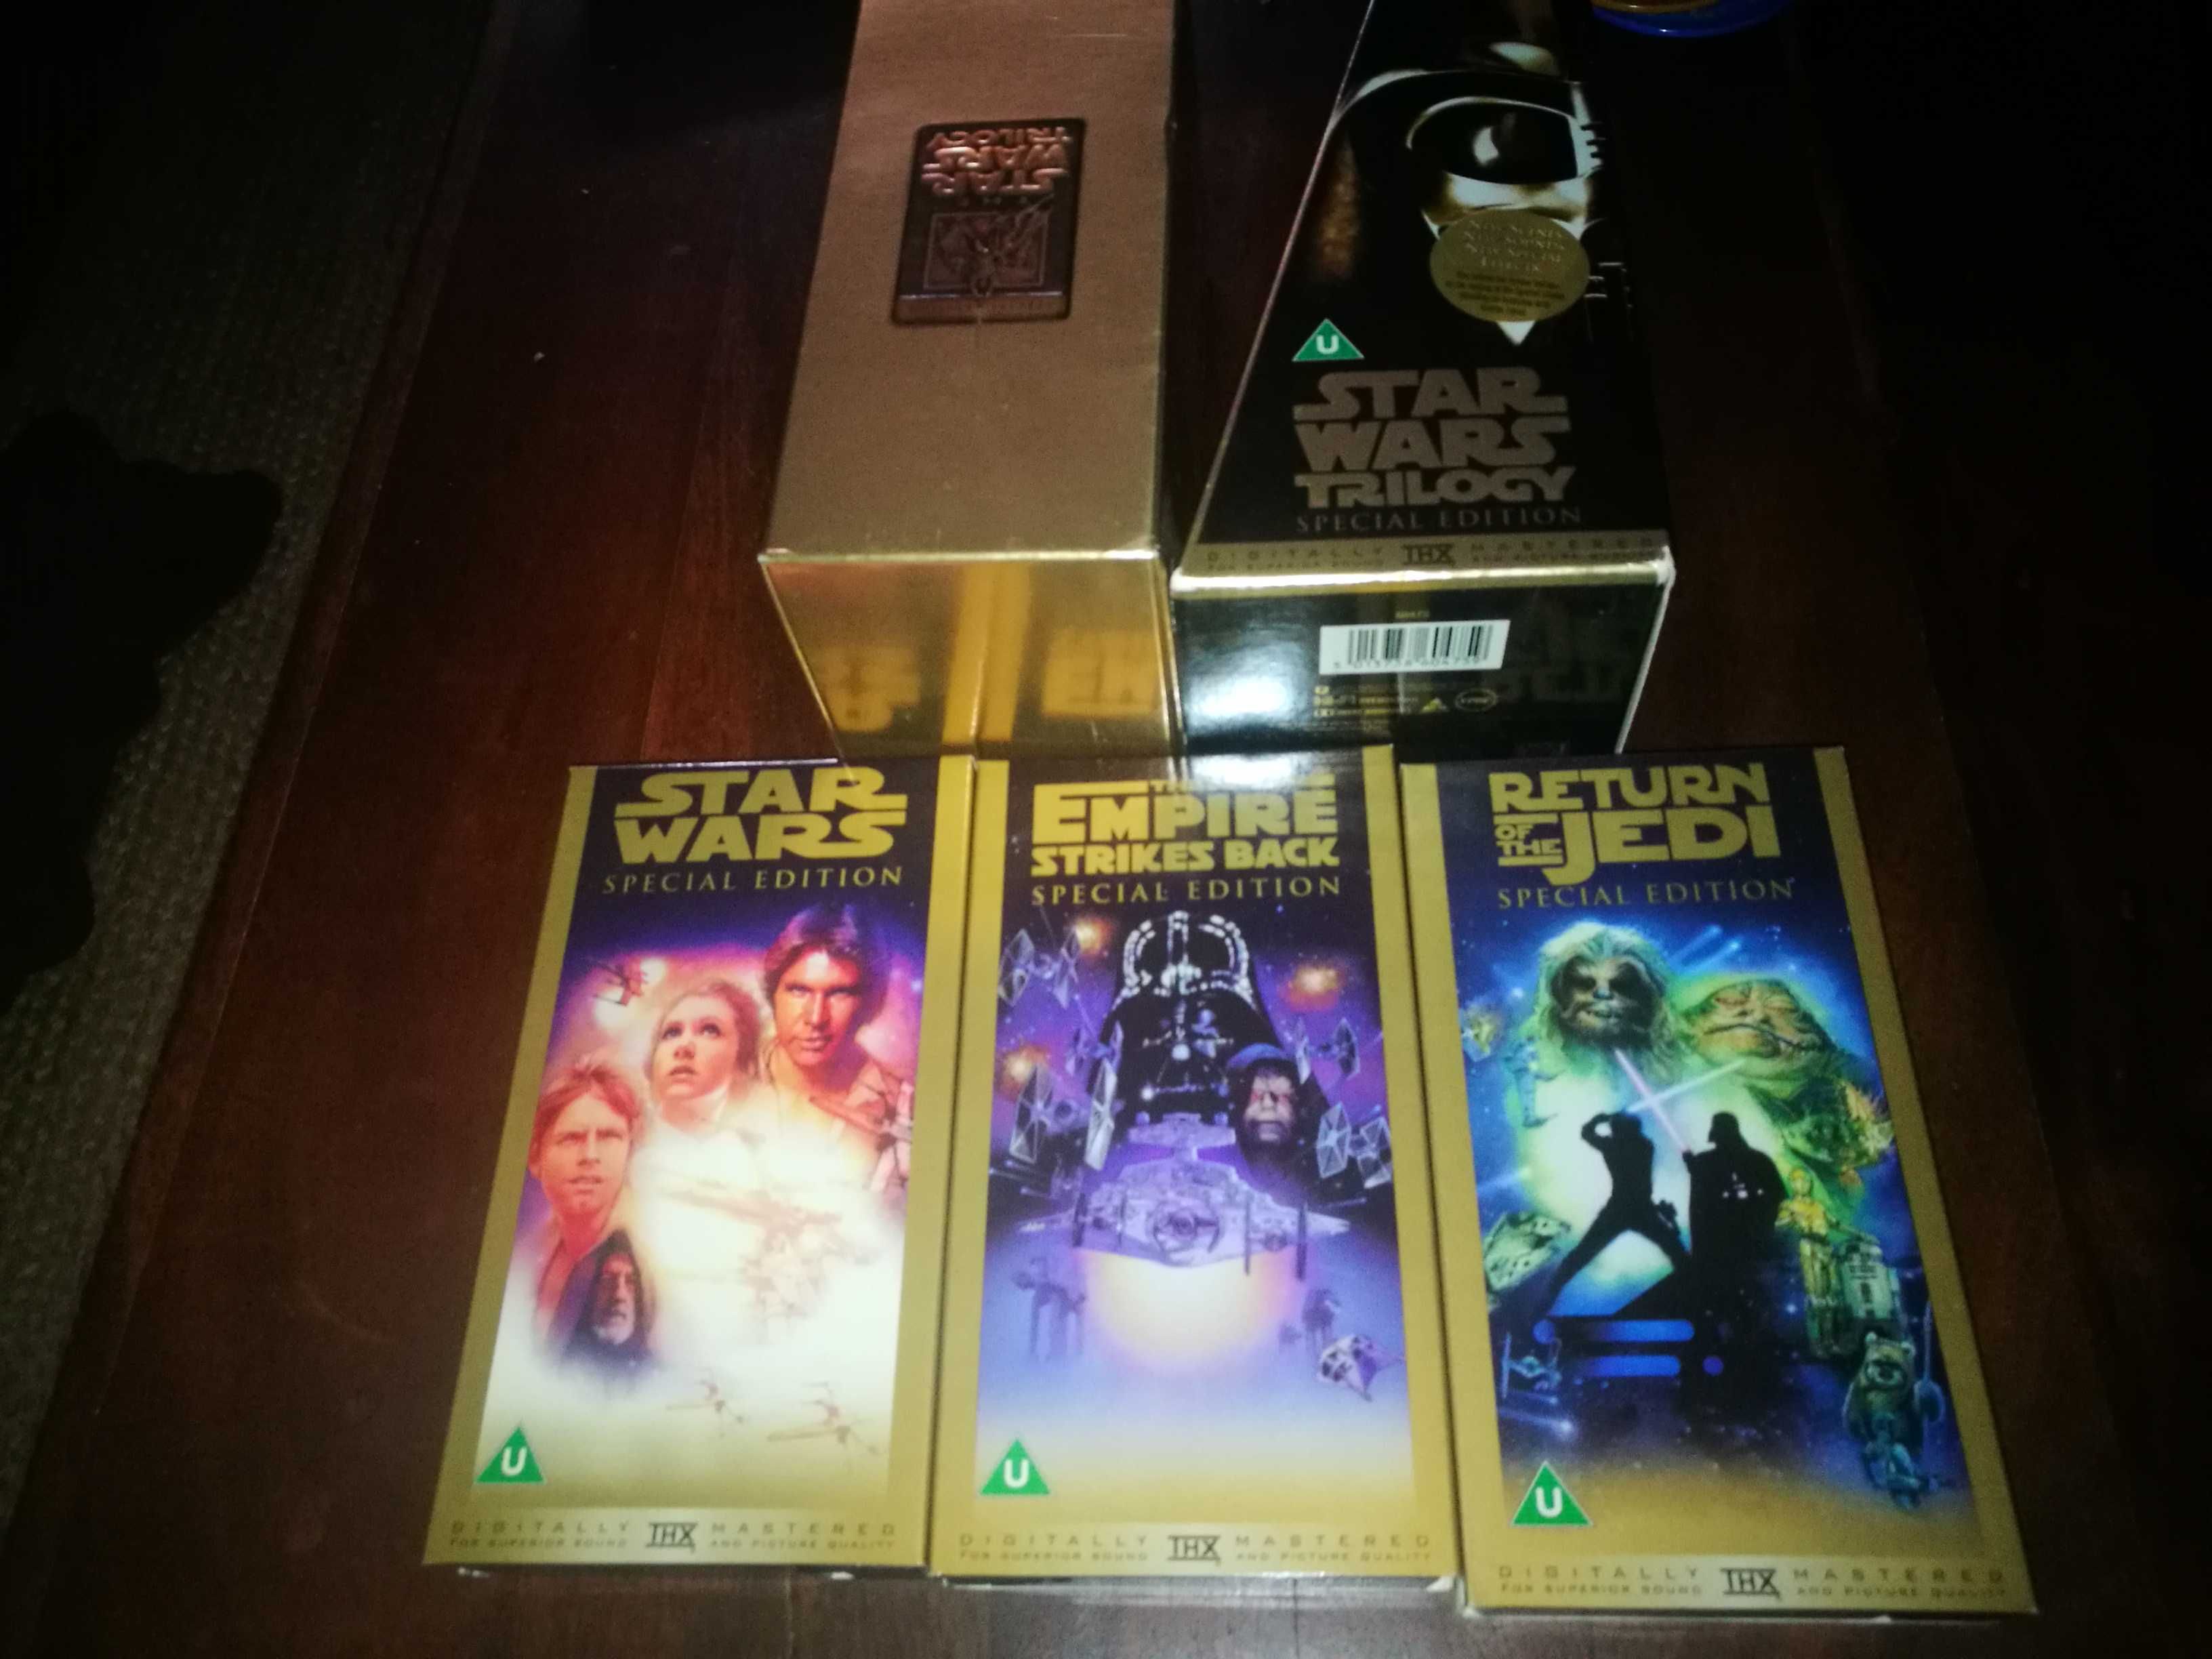 Star Wars - Trilogy (SPECIAL EDITION) caixa com os 3 Filmes VHS